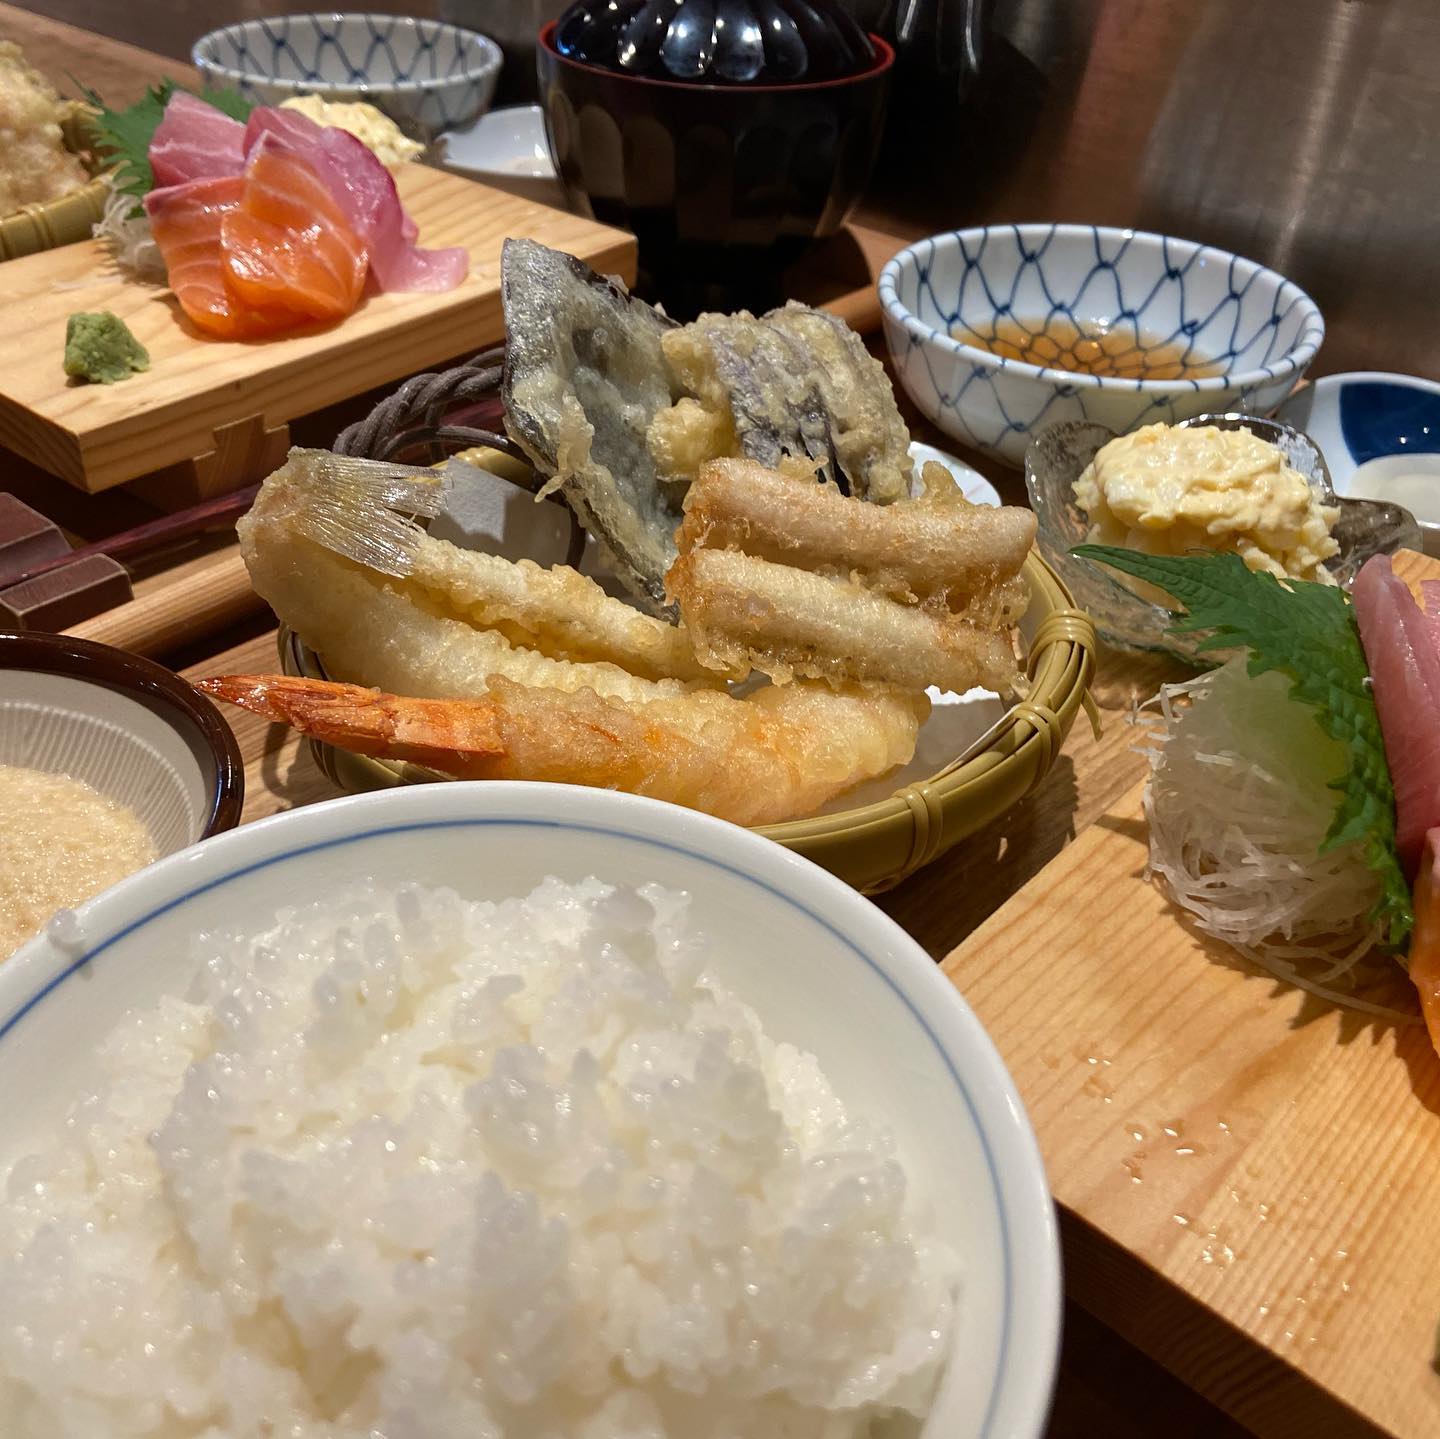 明日のランチは、お刺身と天ぷらの定食になります。

お待ちしております。

割烹伍